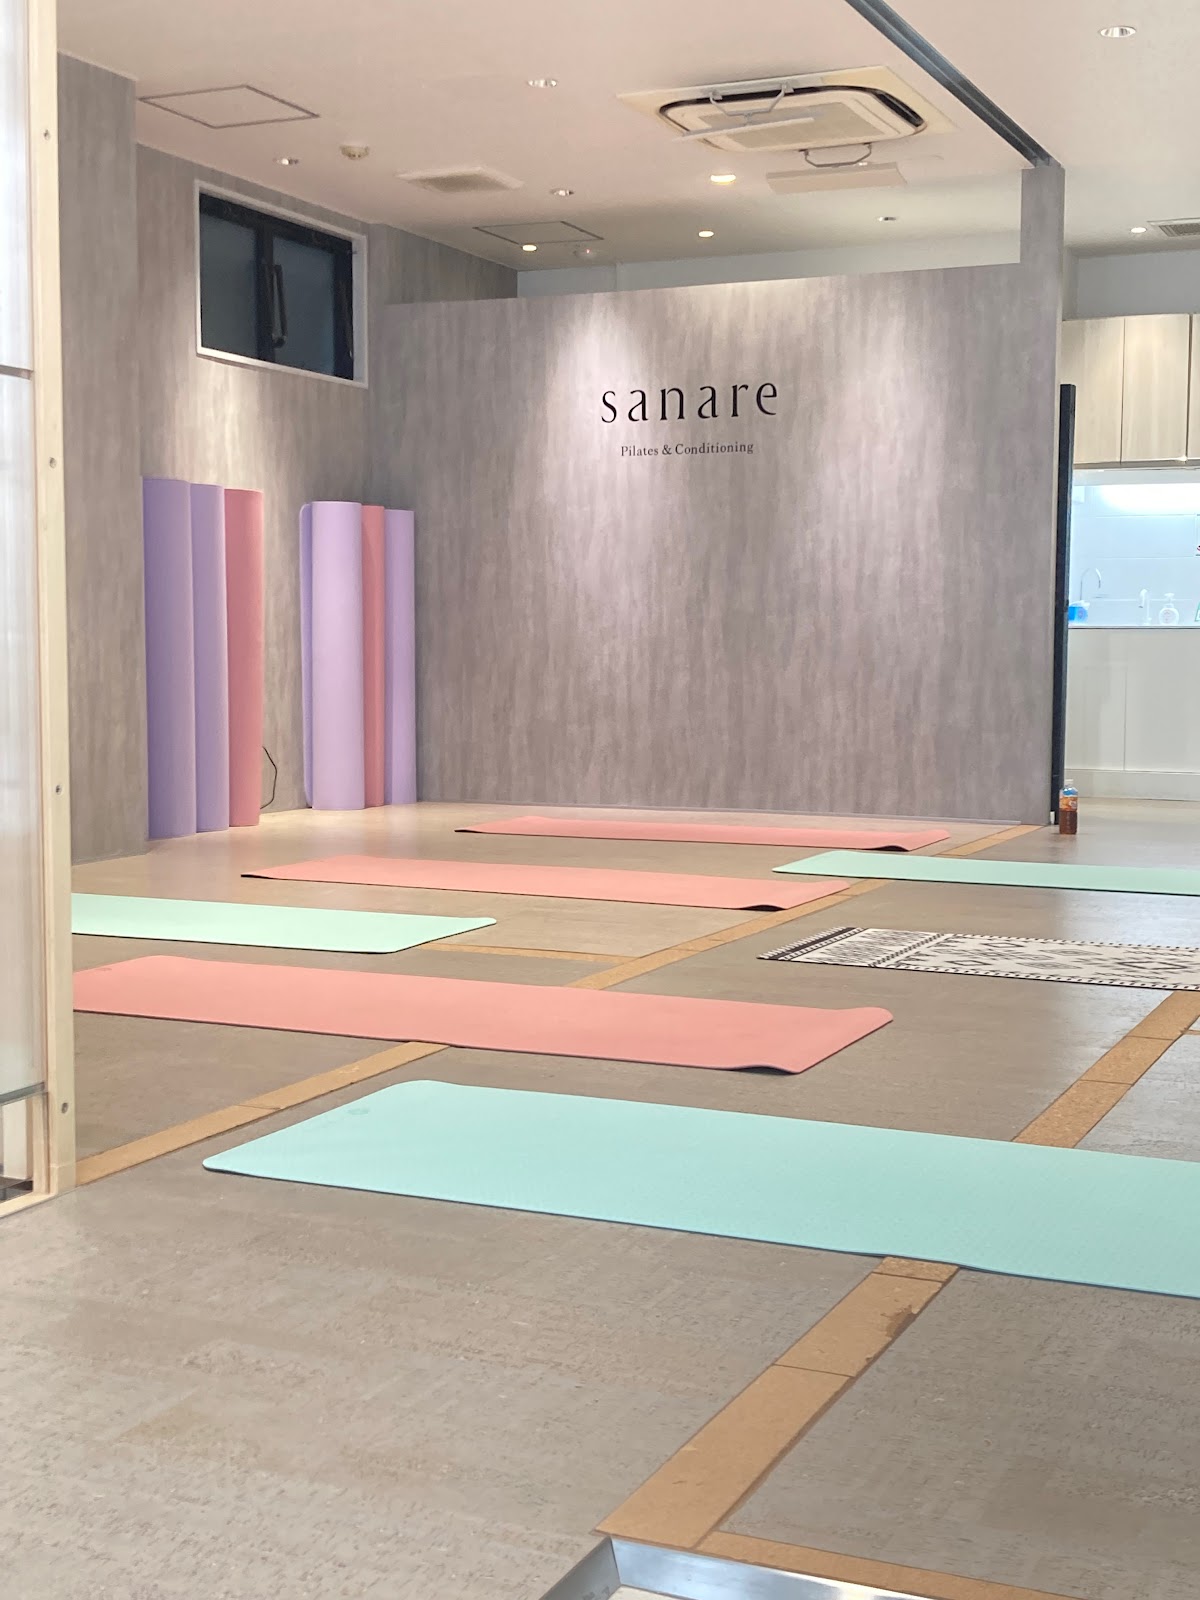 sanare Pilates＆Conditioning 東京飯田橋店にて